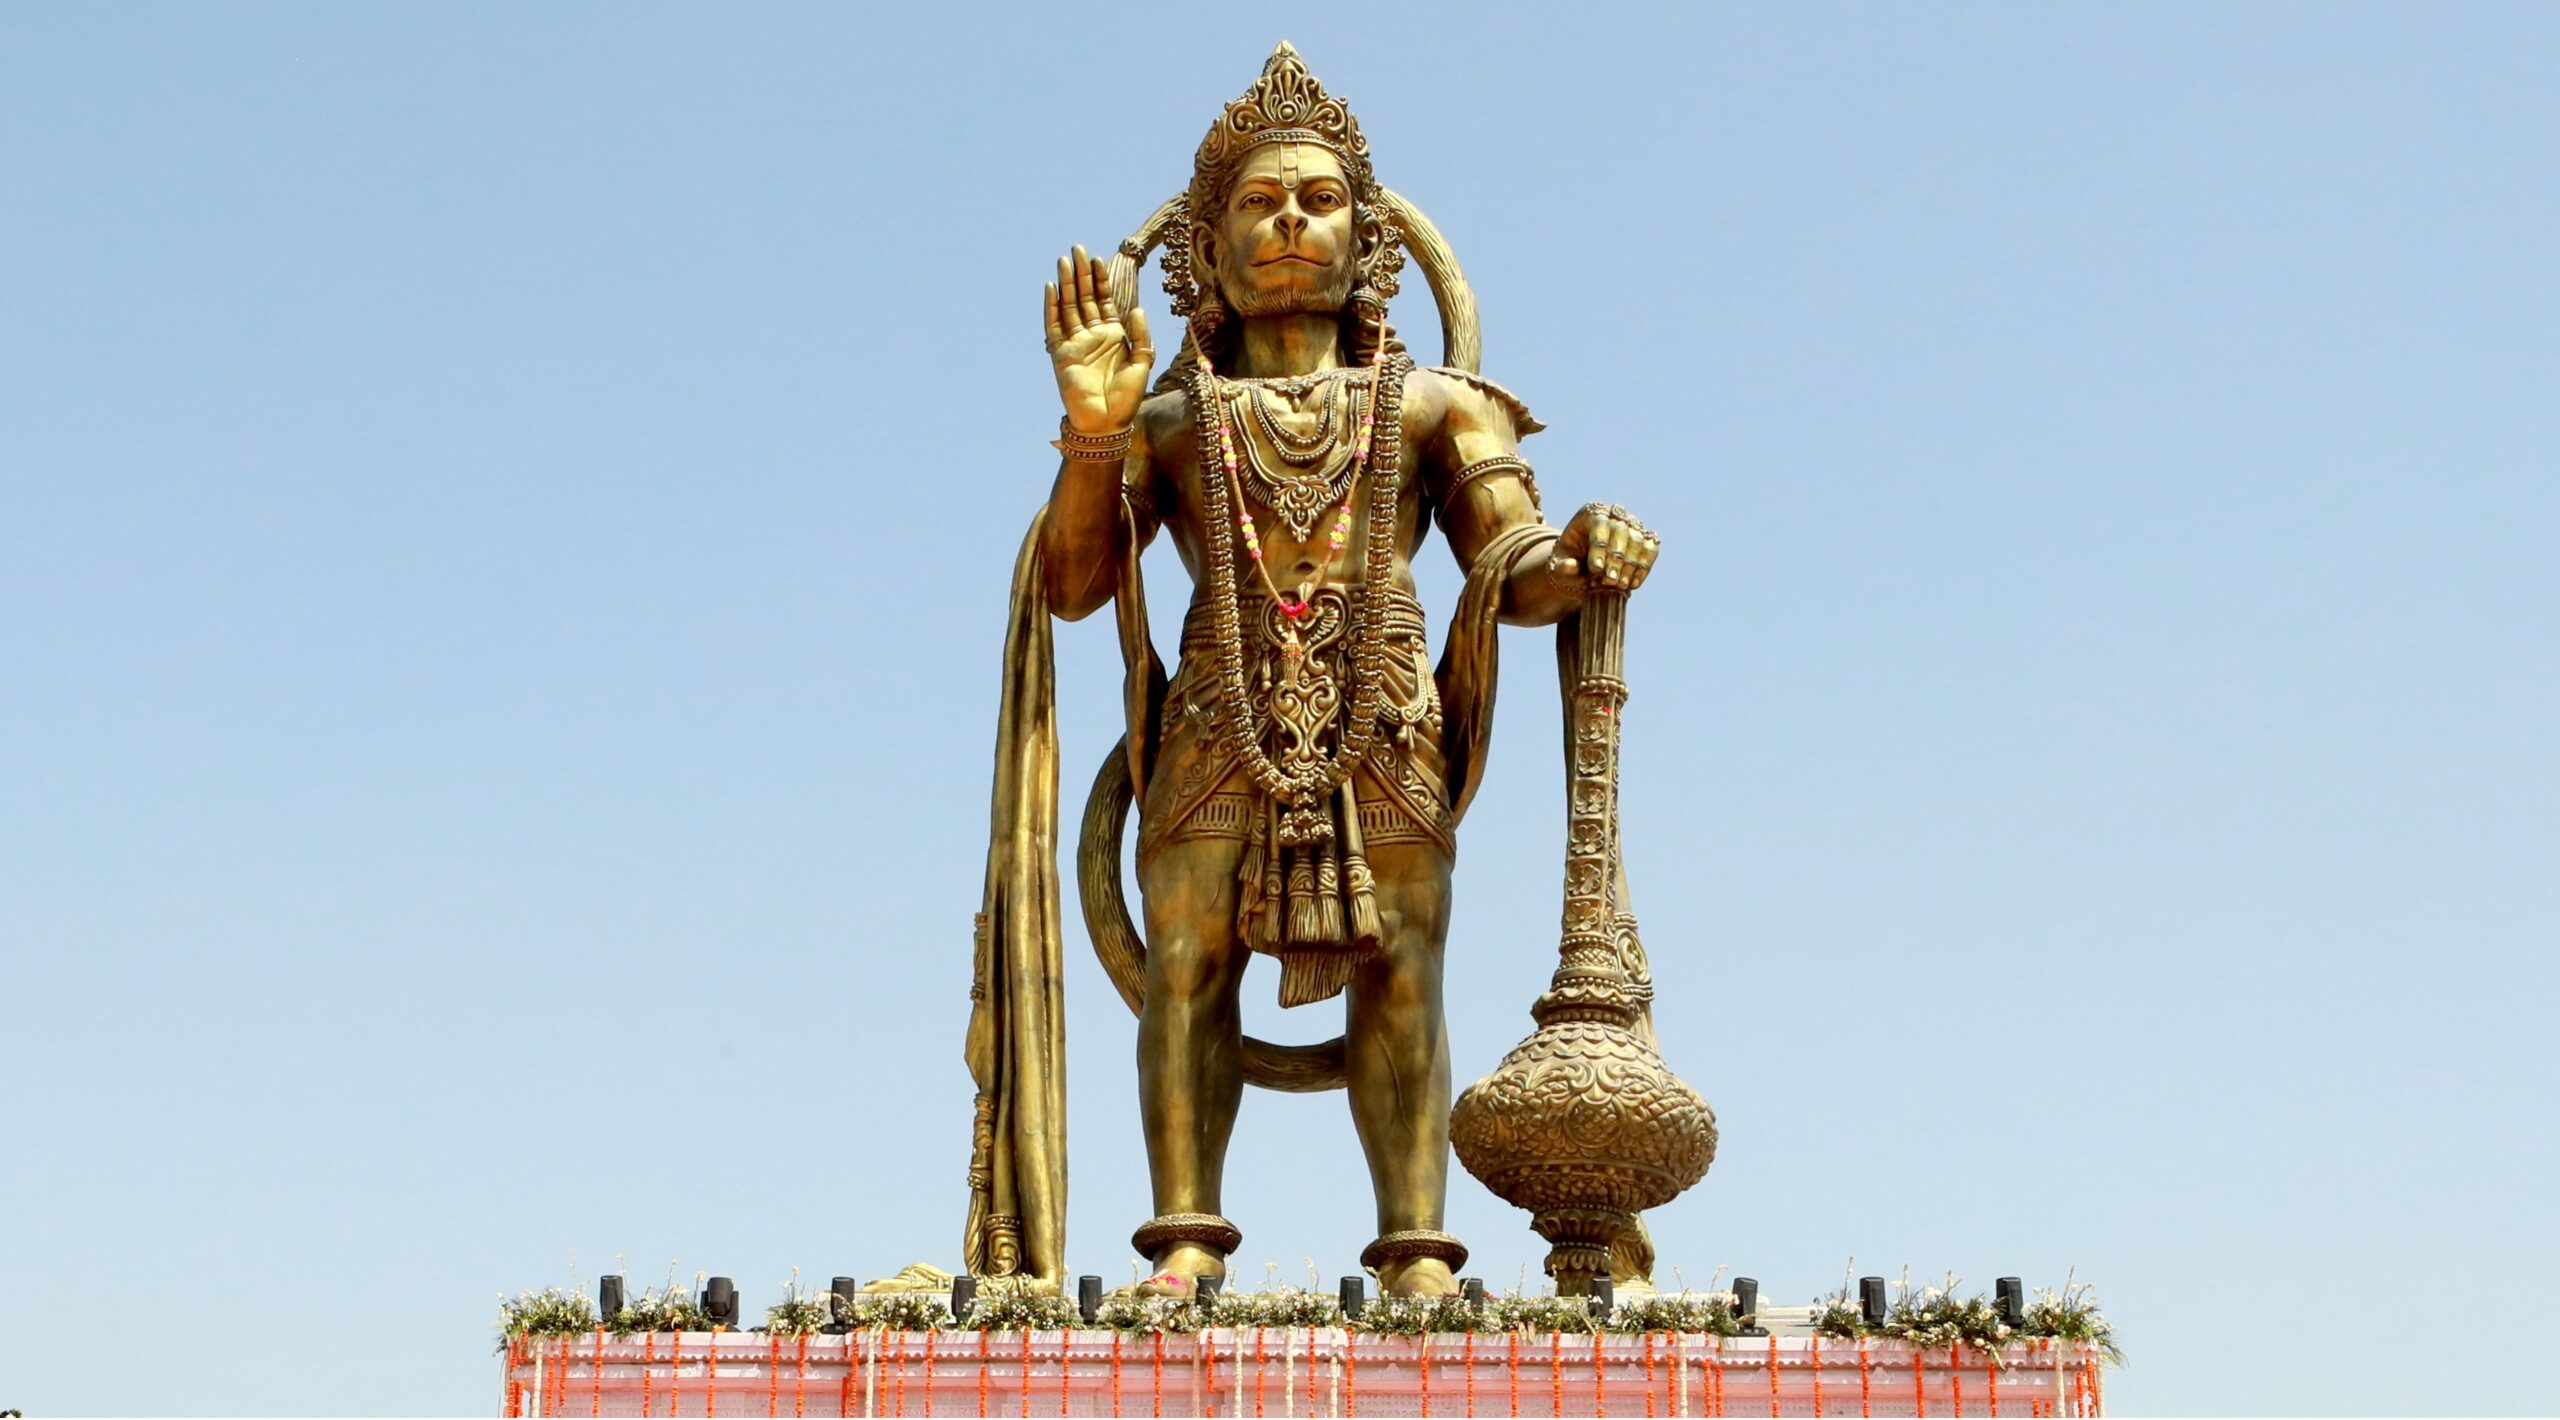 सारंगपुर में 54 फीट ऊंची बजरंगबली की प्रतिमा का लोकार्पण, 11 करोड़ का खर्चा, 30 हजार किलो वजन, 7 किमी दूर से हो सकेंगे दर्शन